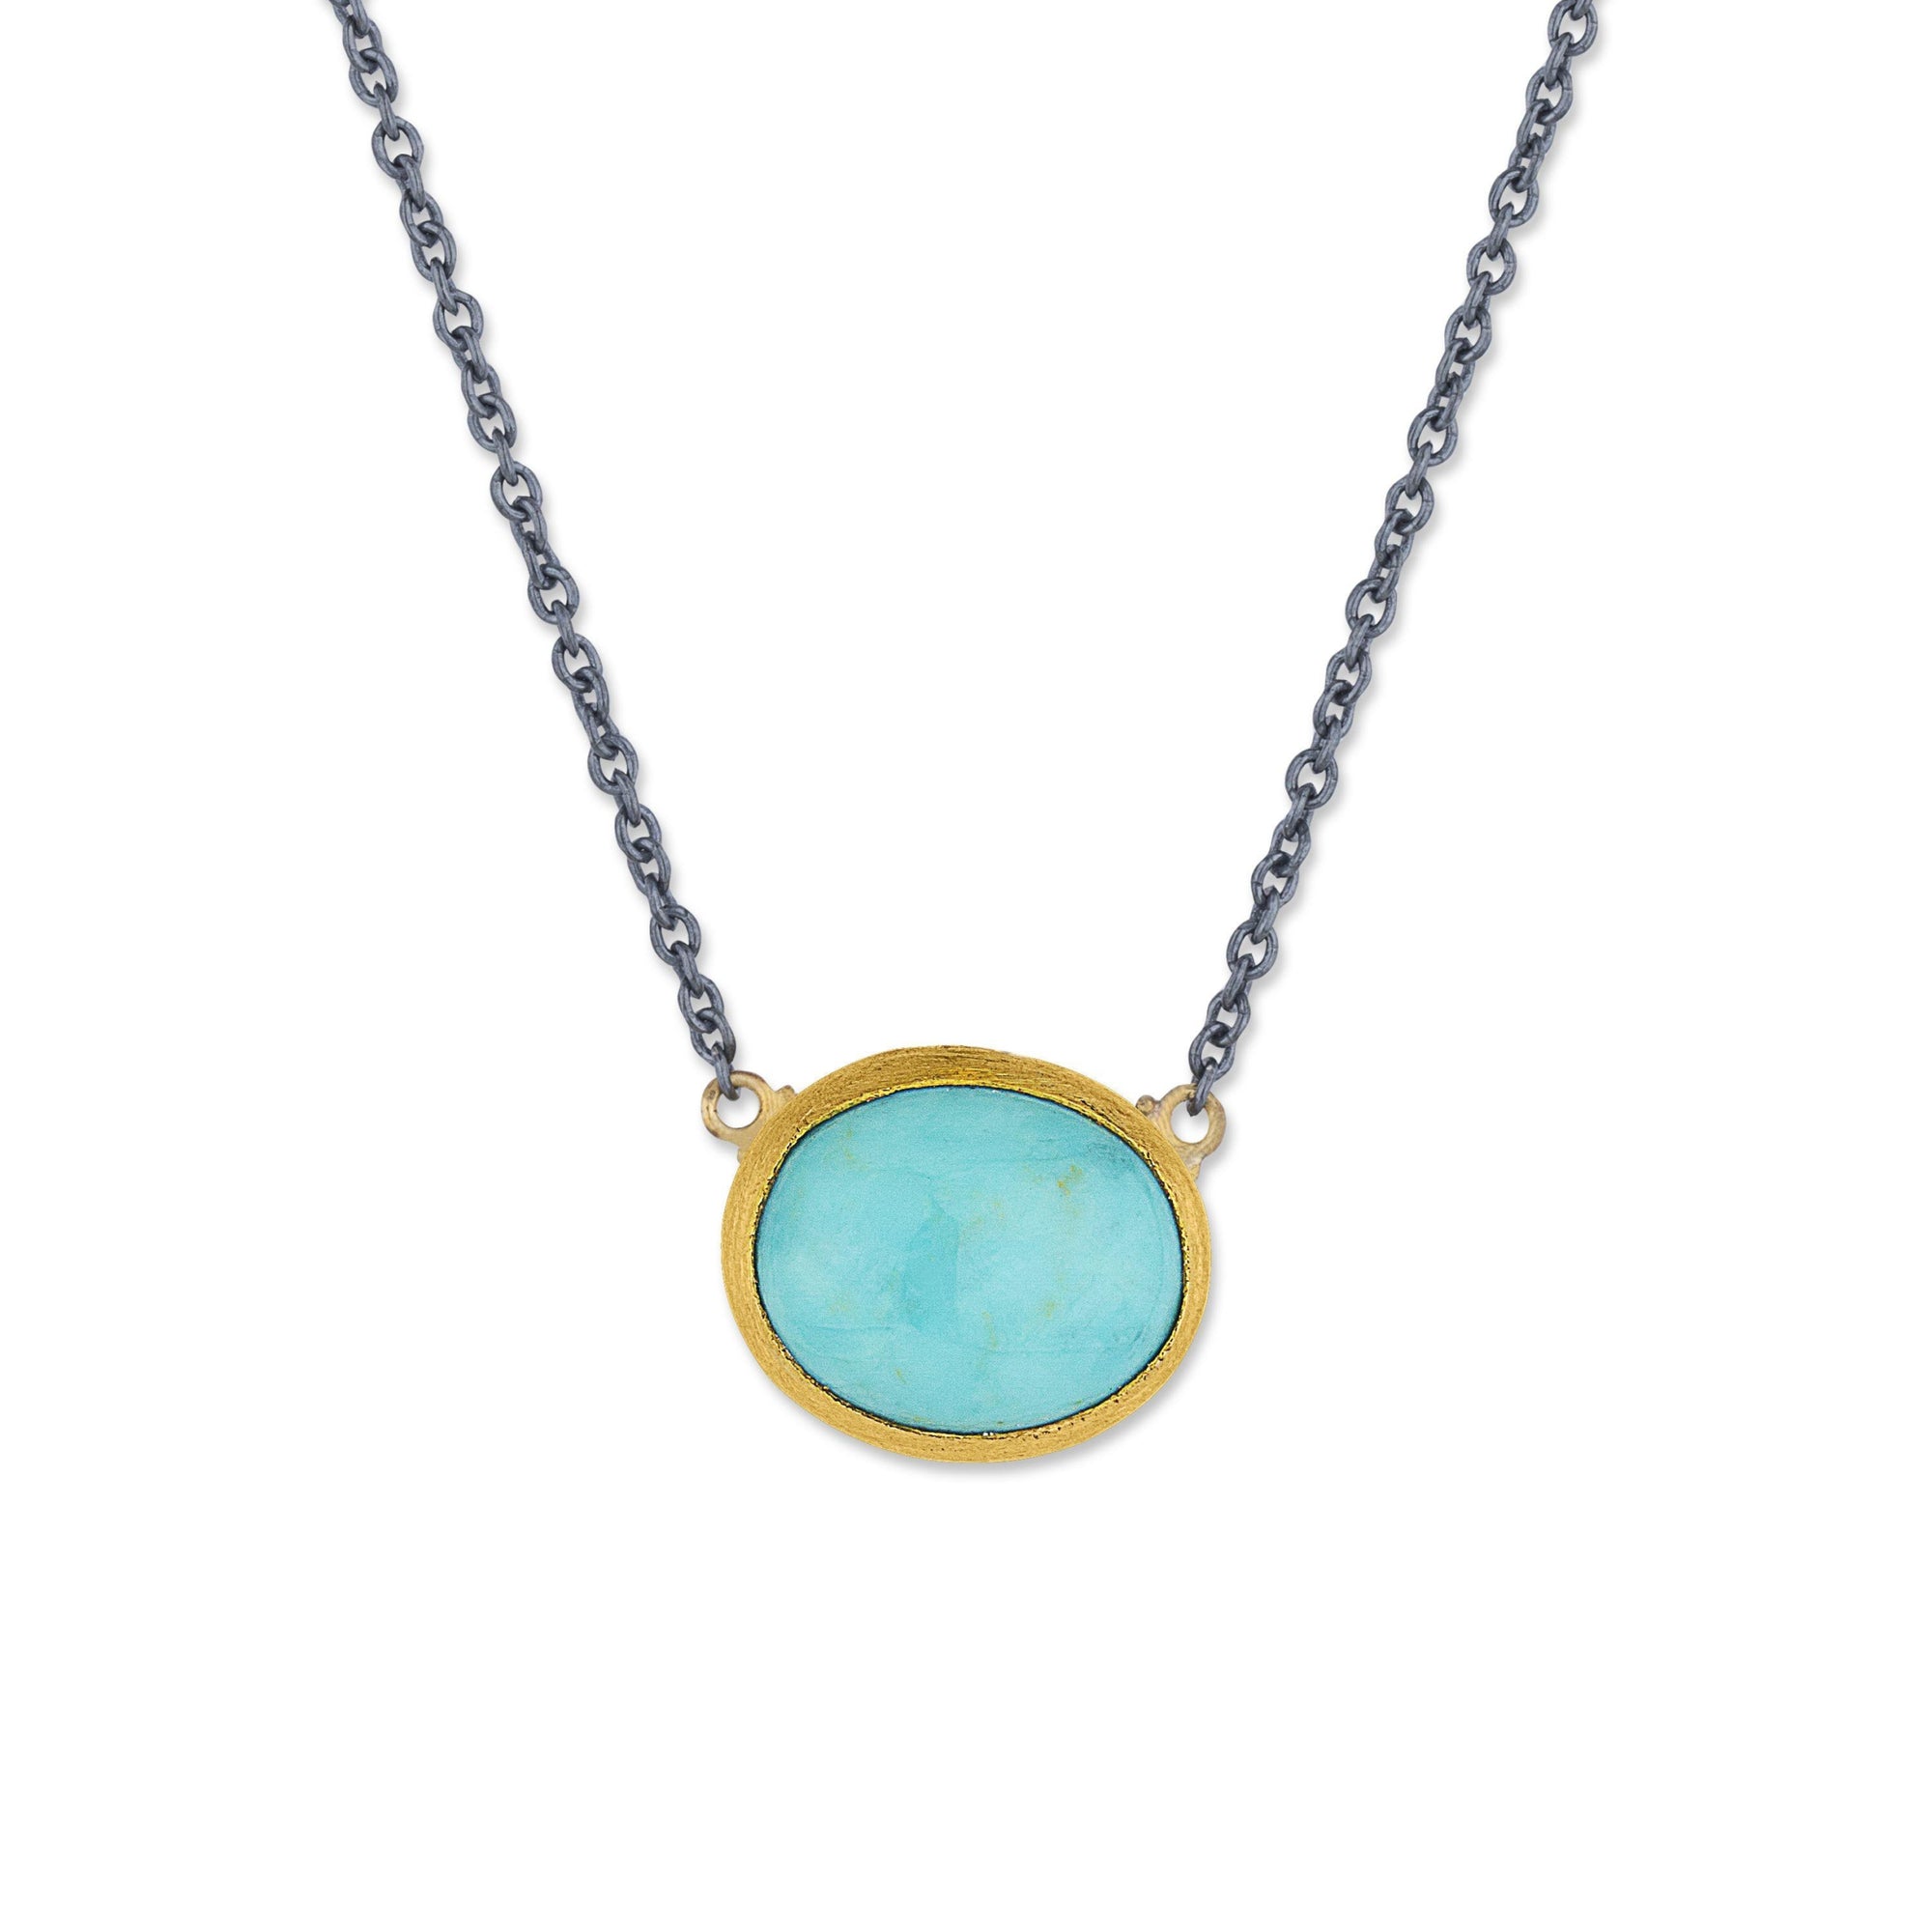 Lika Behar 24K & Oxidized Silver Kingman Turquoise “Karin” Necklace